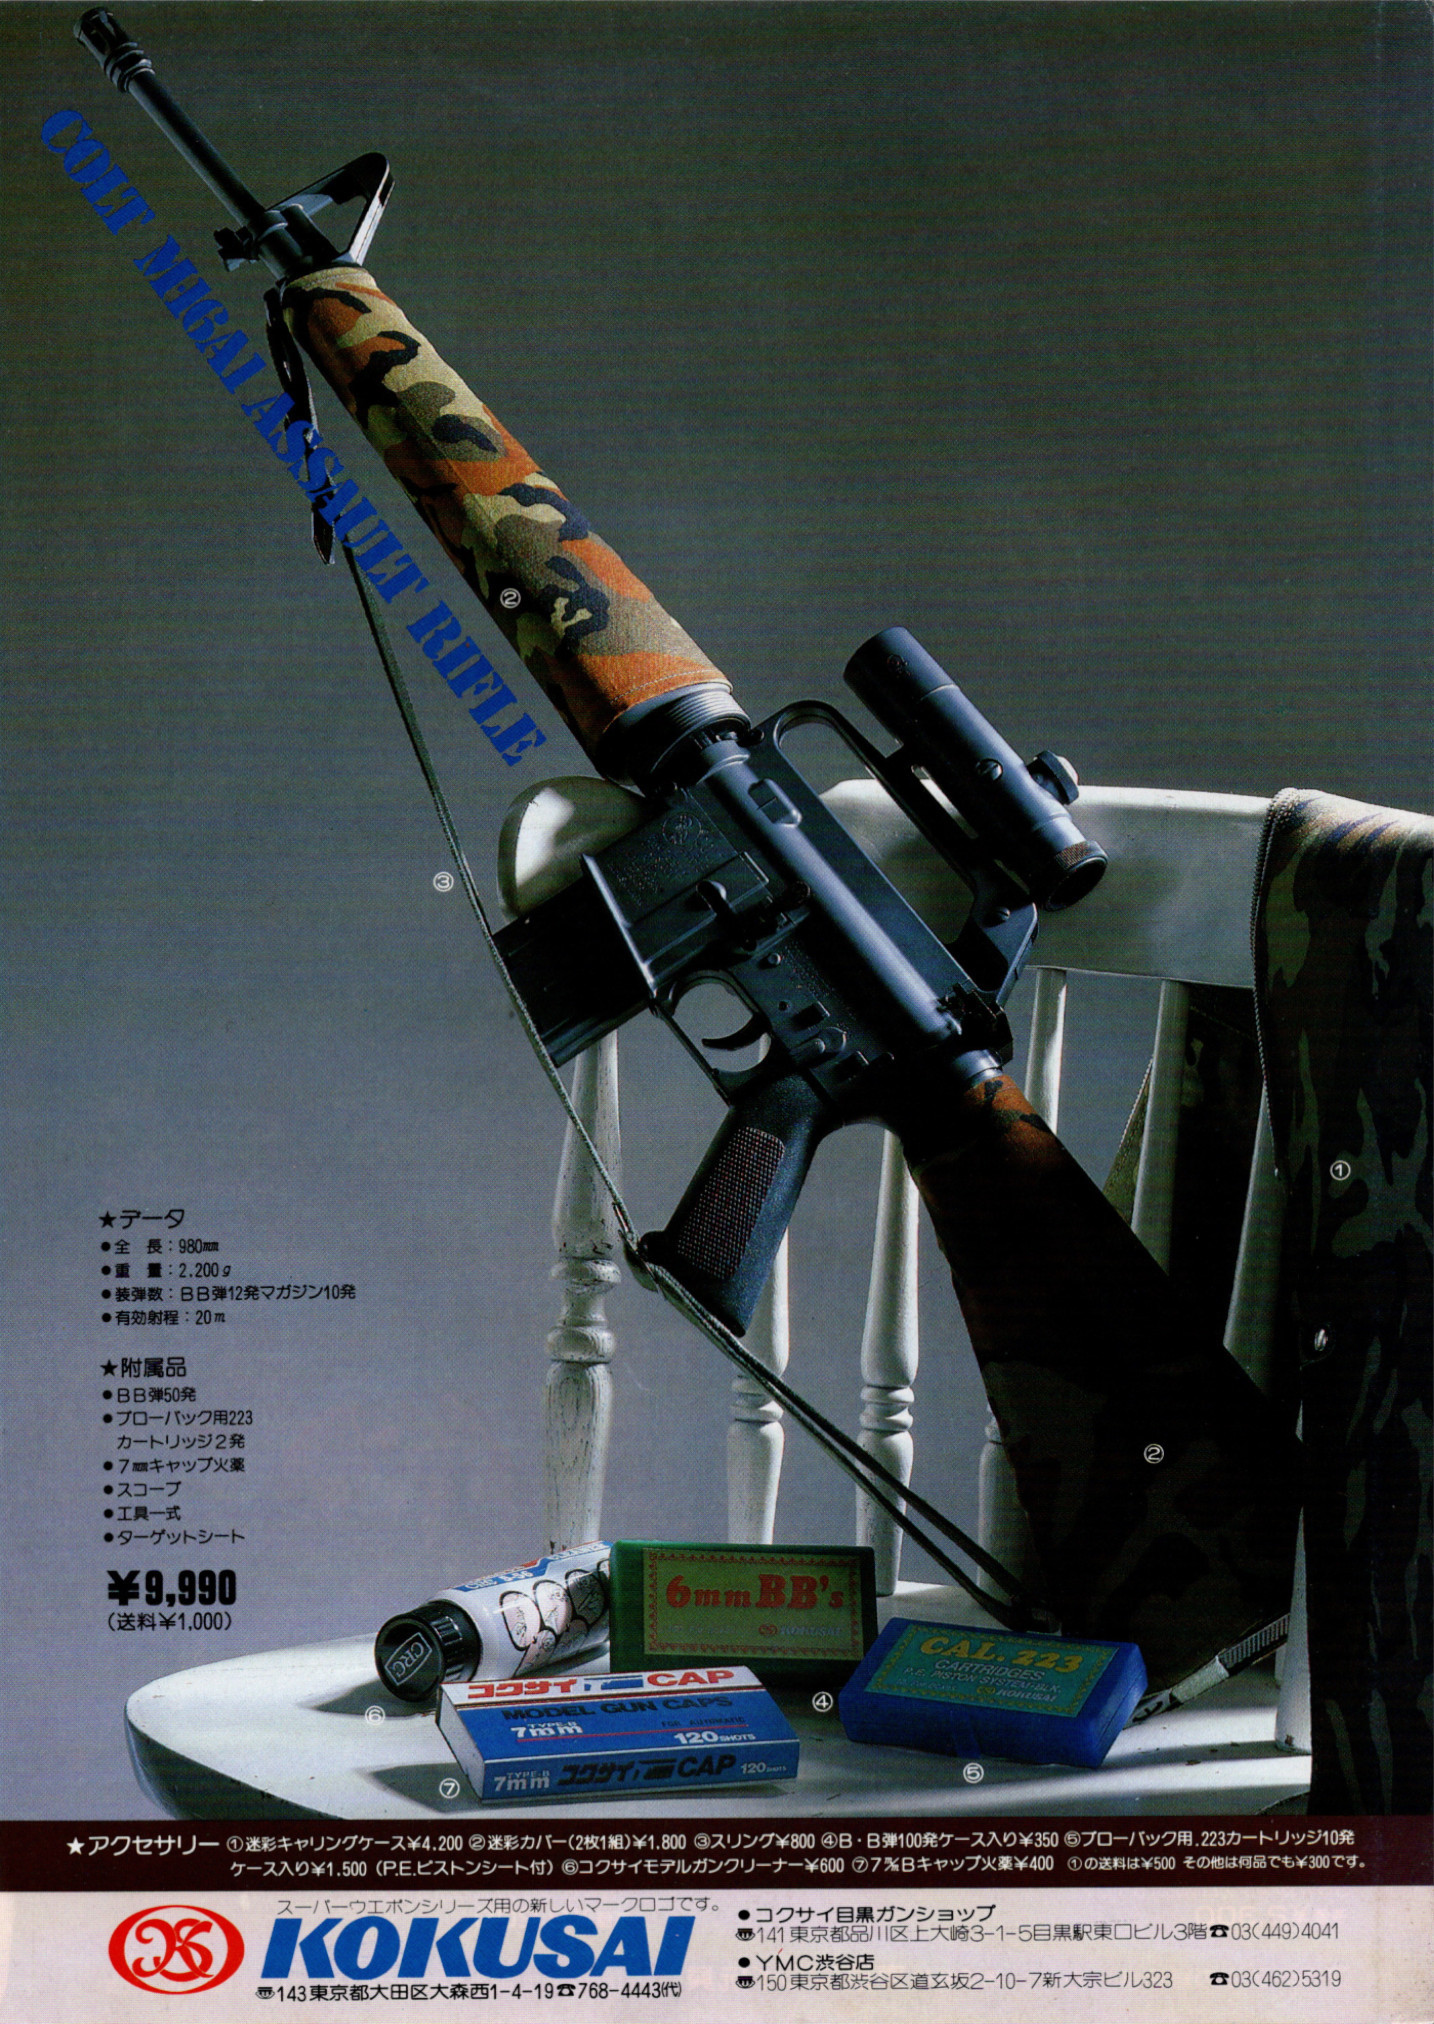 1979年 コクサイ M16 A1 ベトナム フルメタル 平玉火薬式 未発火-